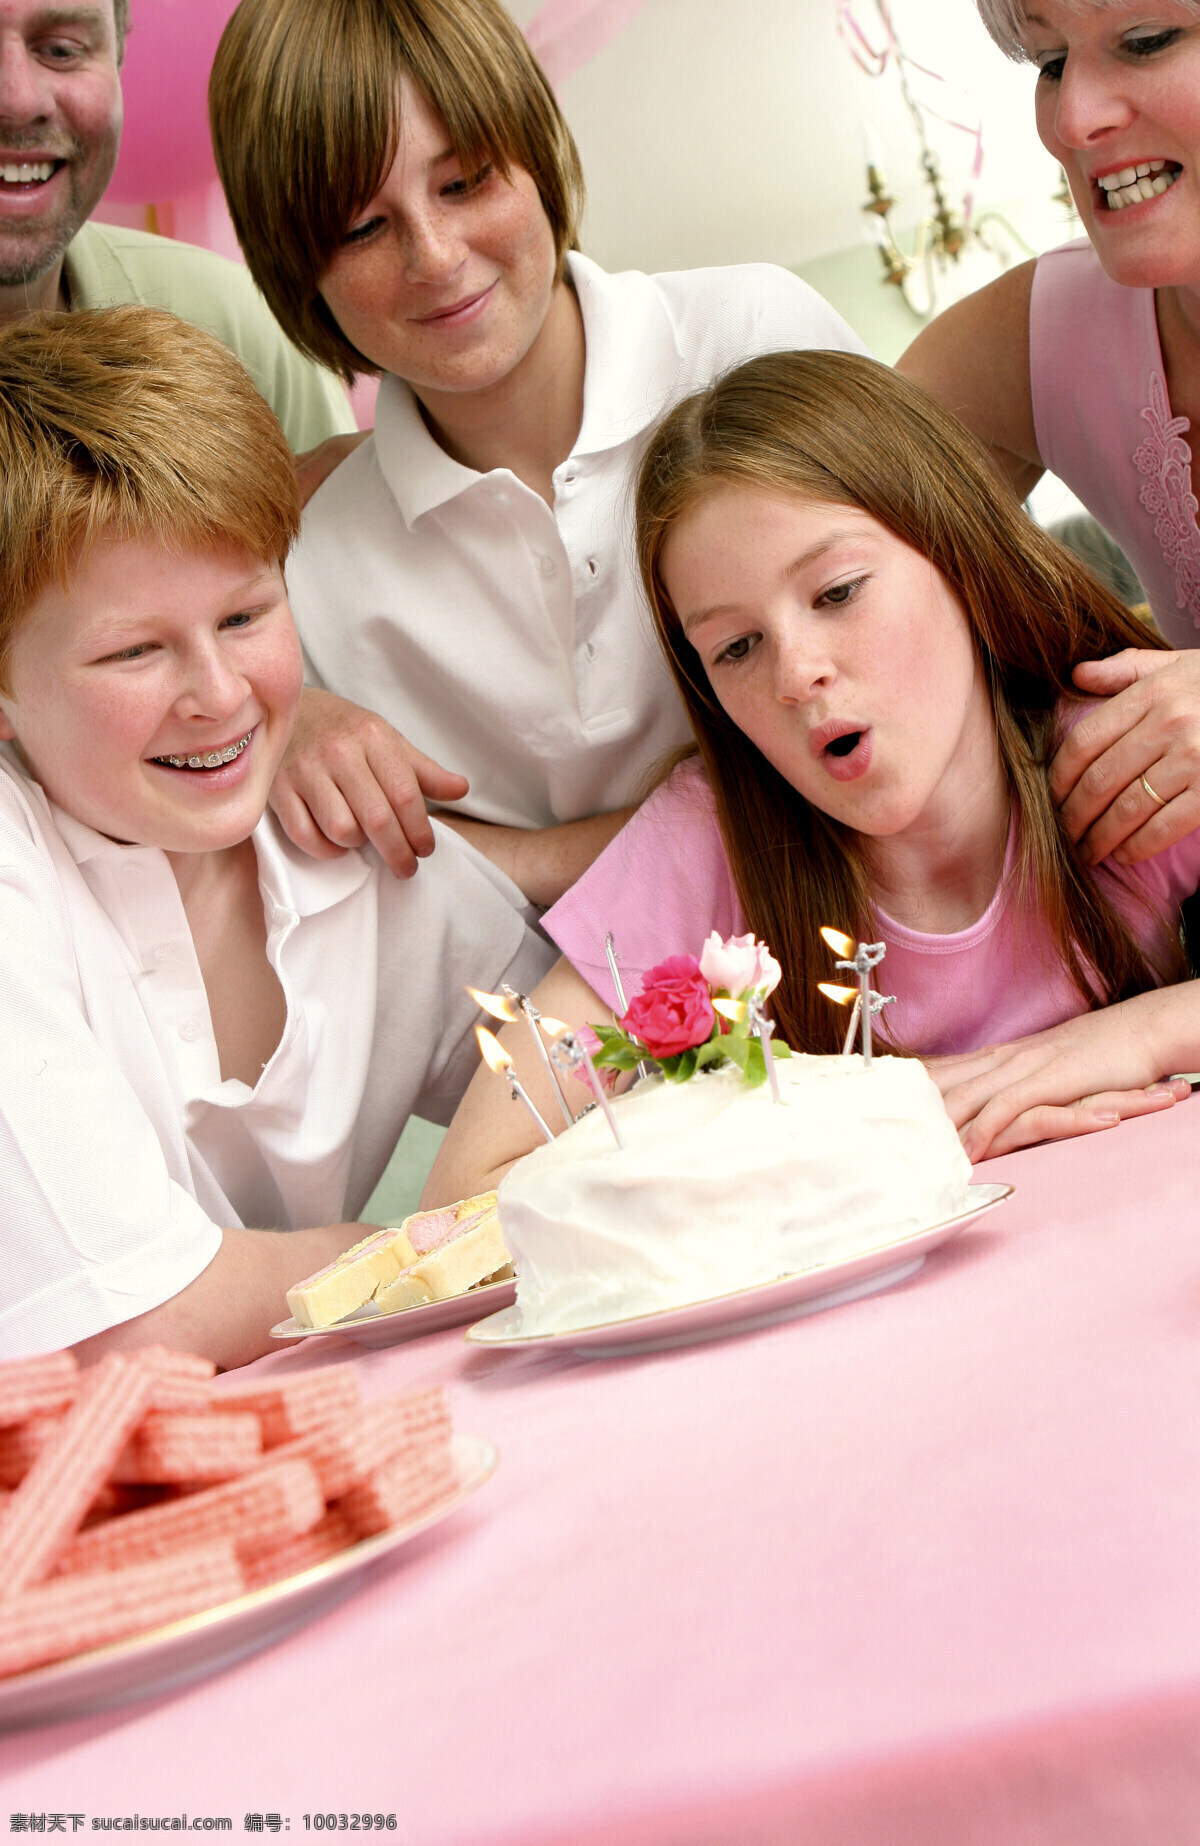 正在 生日 一家人 人物 家庭 美满 幸福 亲情 温馨 过生日 蛋糕 吹蜡烛 生日图片 生活百科